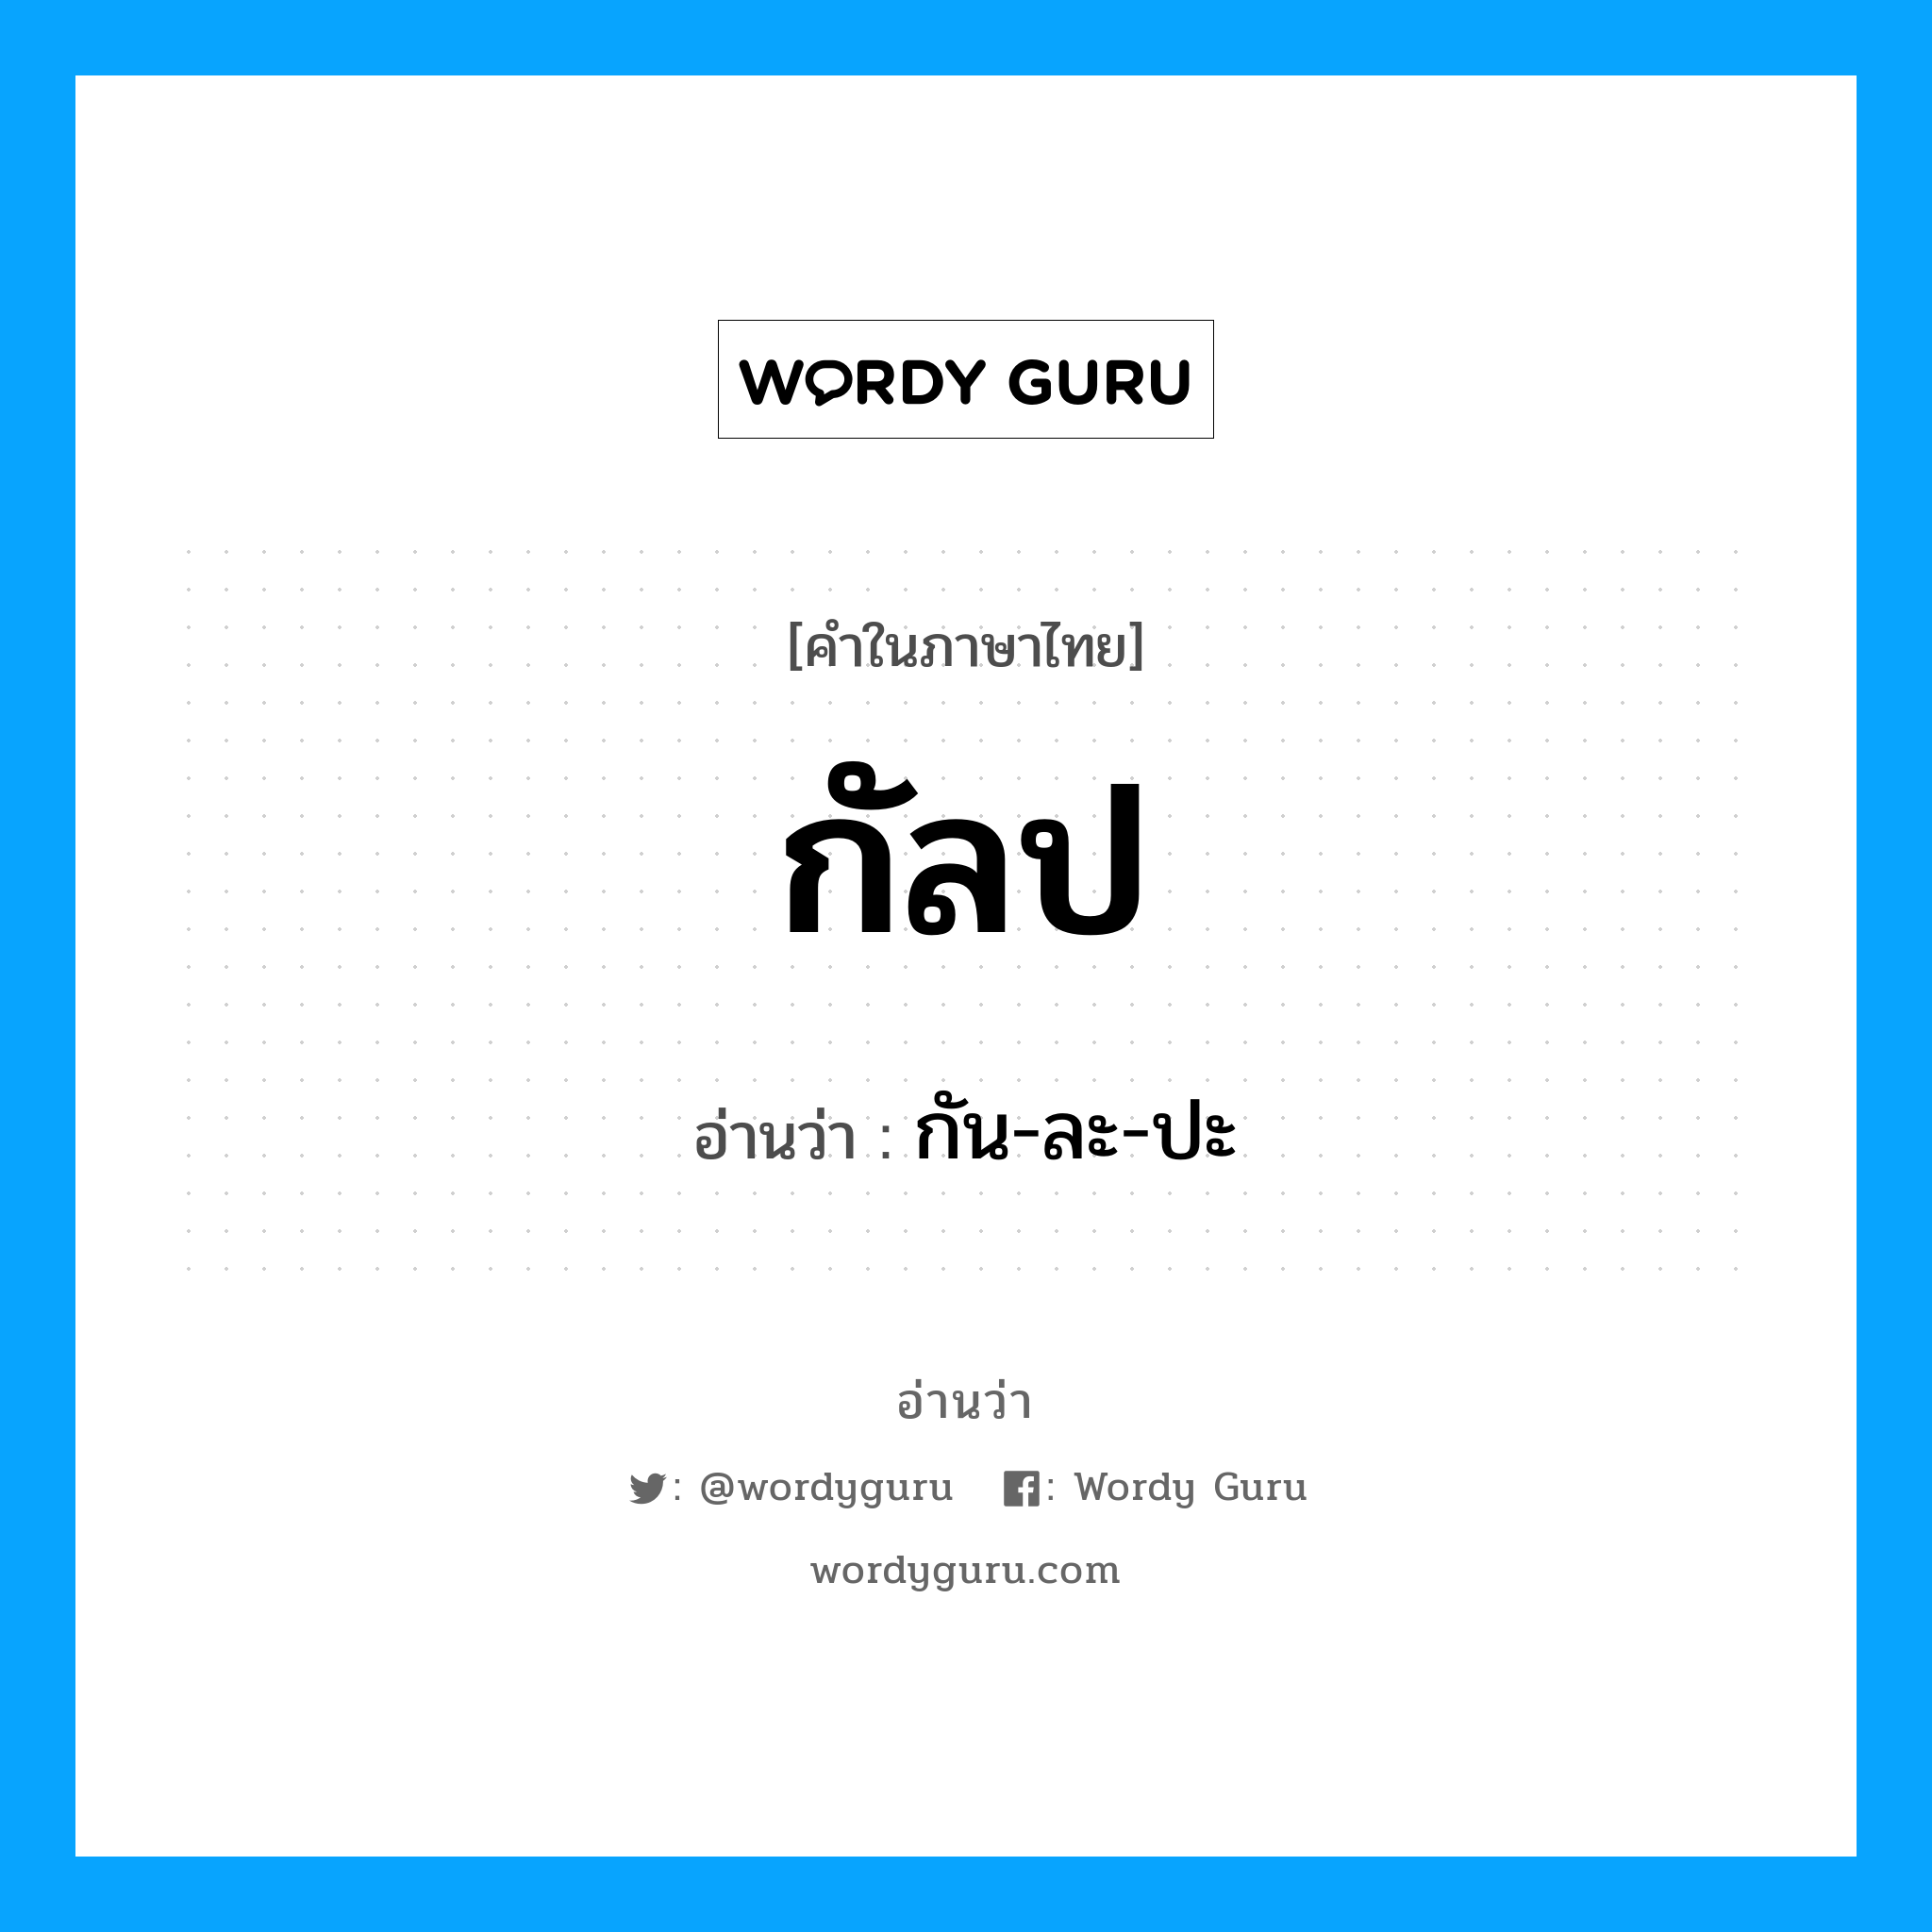 กัน-ละ-ปะ เป็นคำอ่านของคำไหน?, คำในภาษาไทย กัน-ละ-ปะ อ่านว่า กัลป